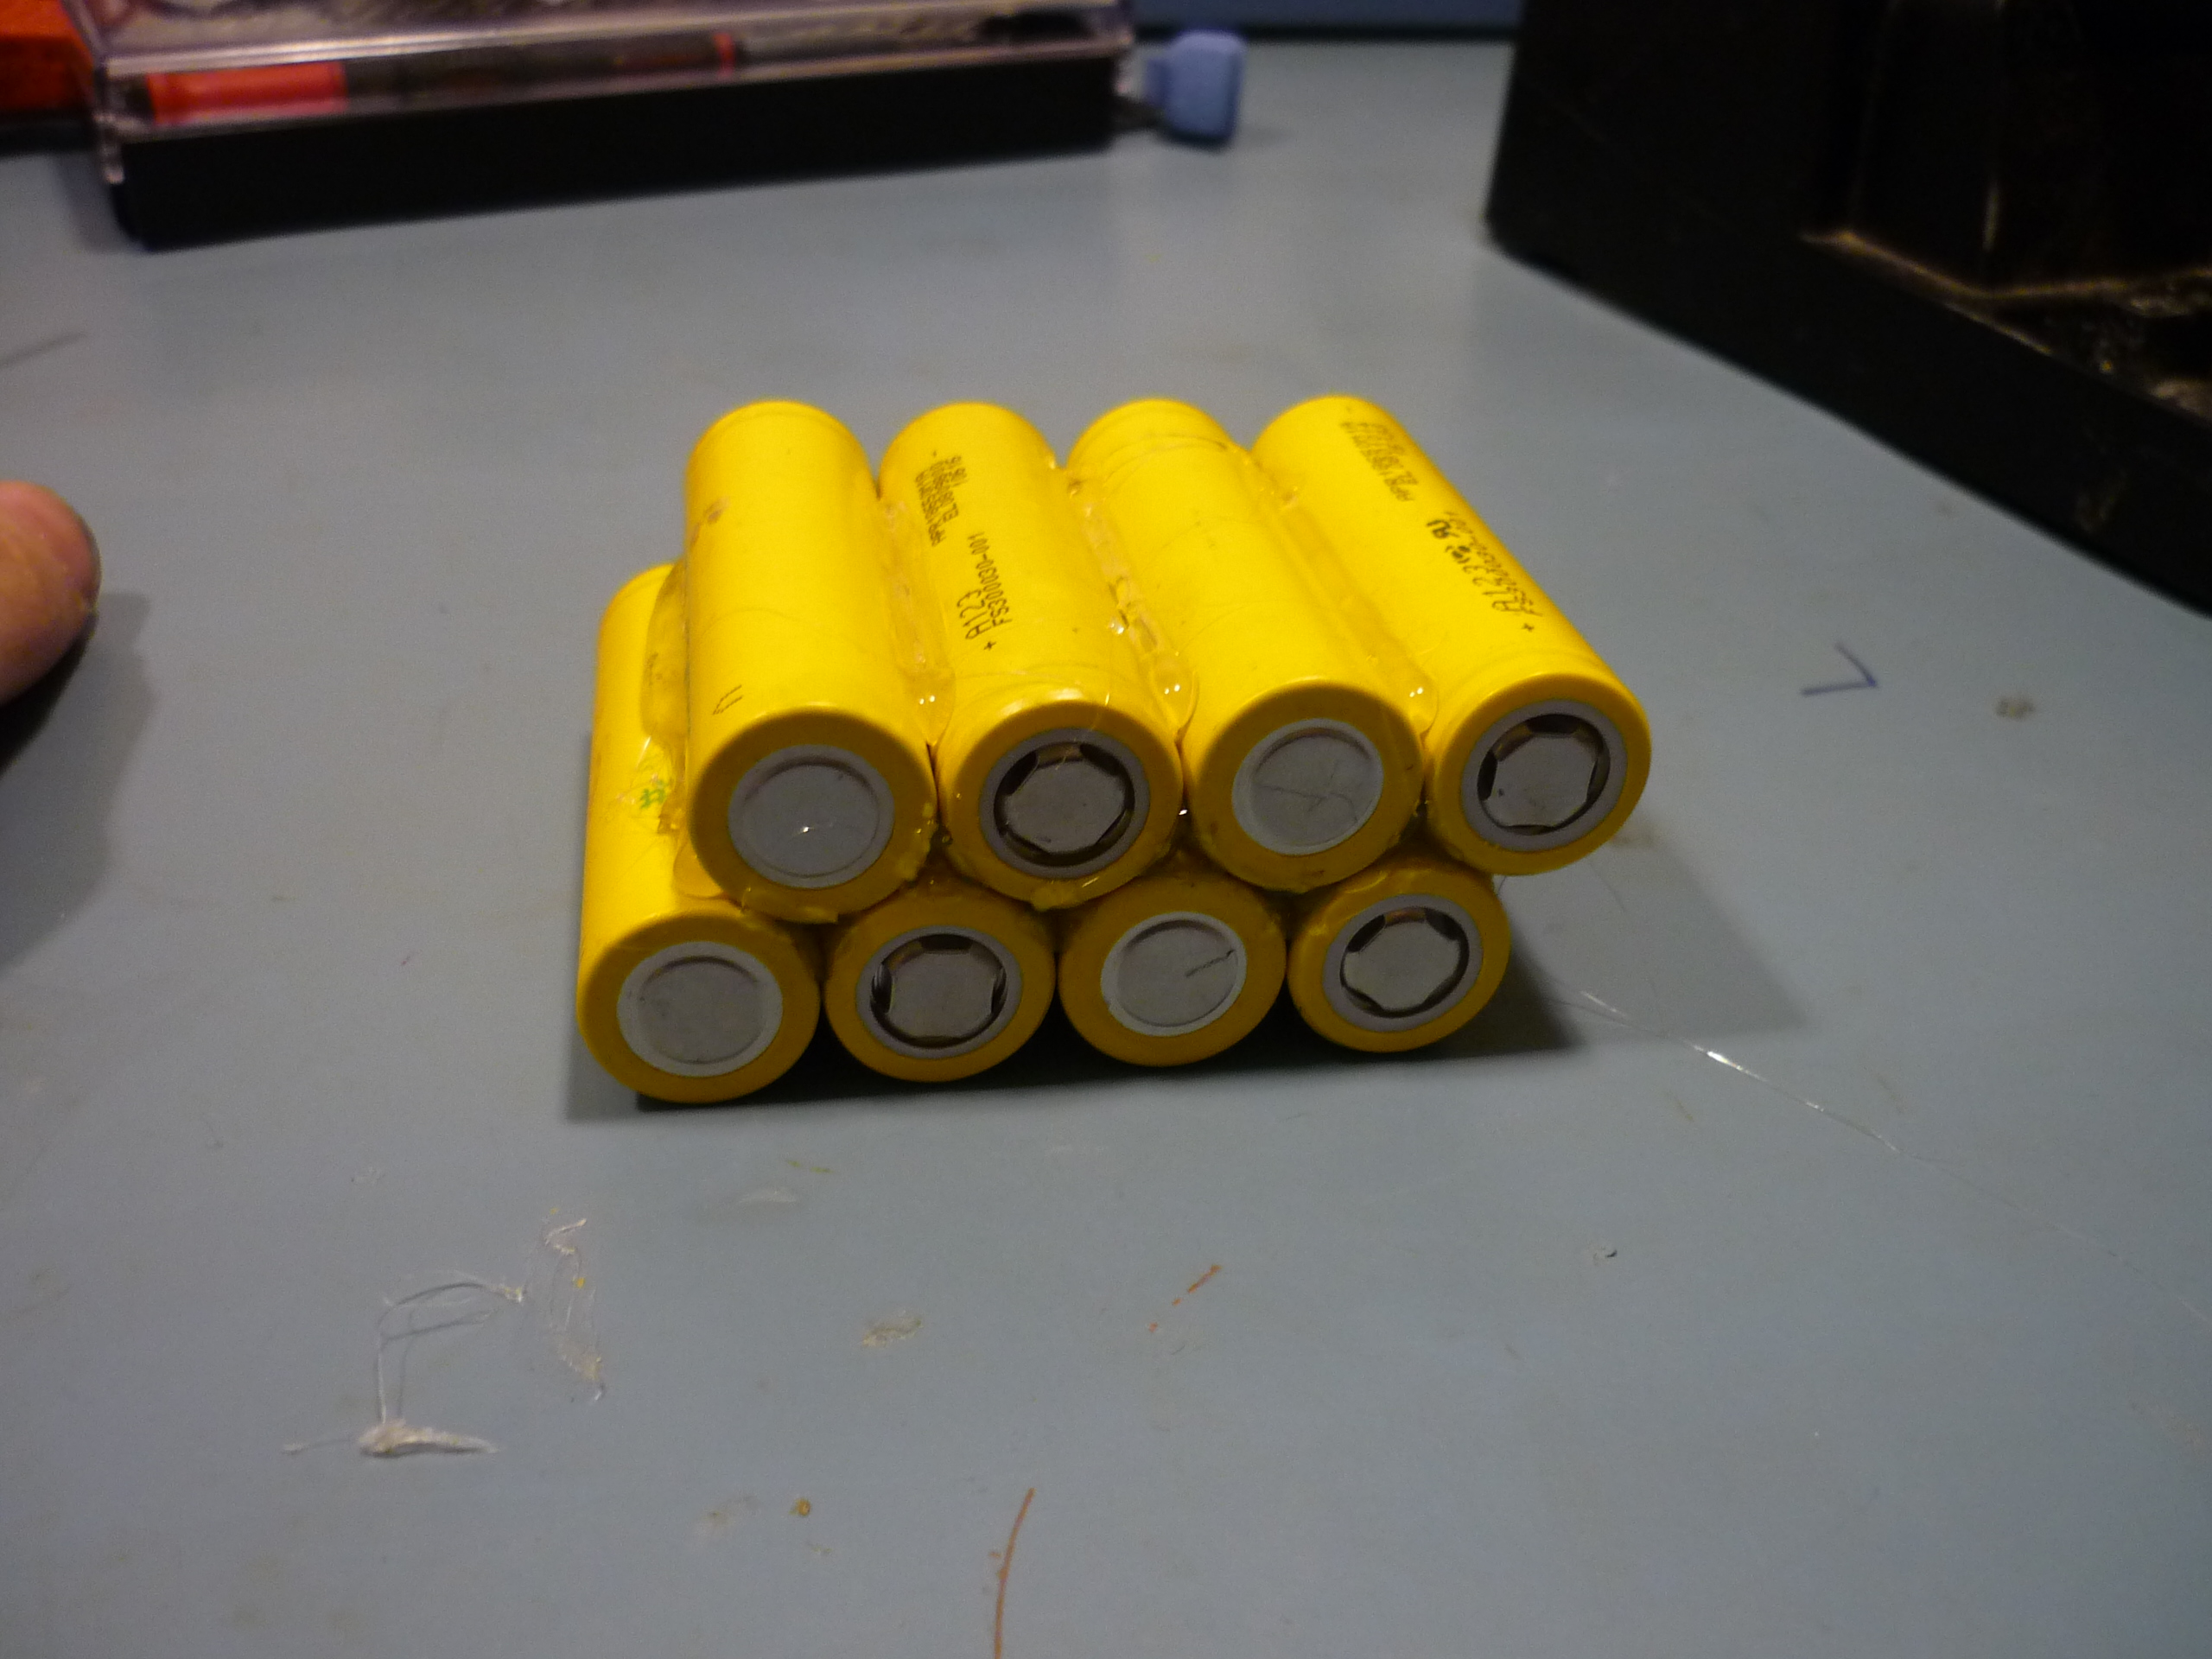 Battery Pack For Black Decker 14.4V DustBuster vacuum hsd-sc1500p P/N  90558174